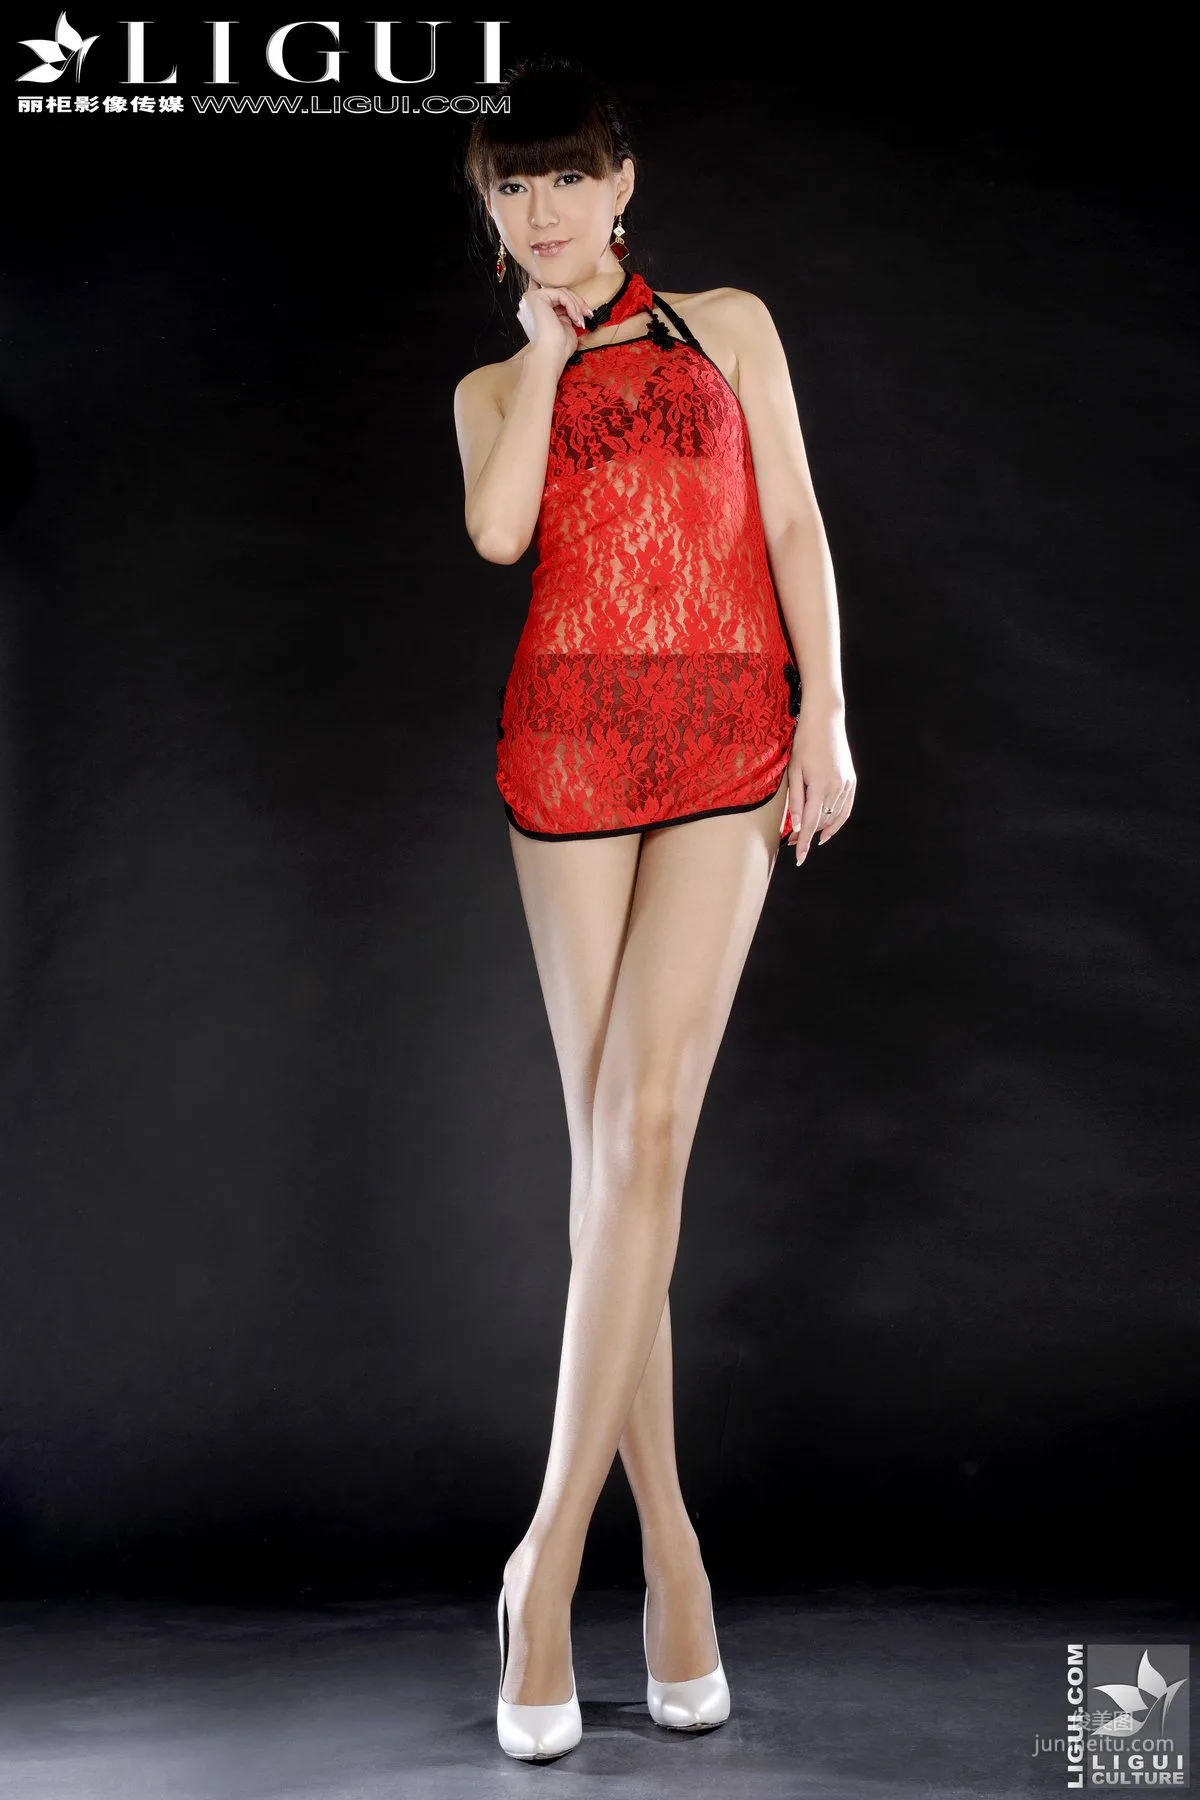 Model Cherry《火红的中国情》 [丽柜LiGui] 美腿玉足写真图片1